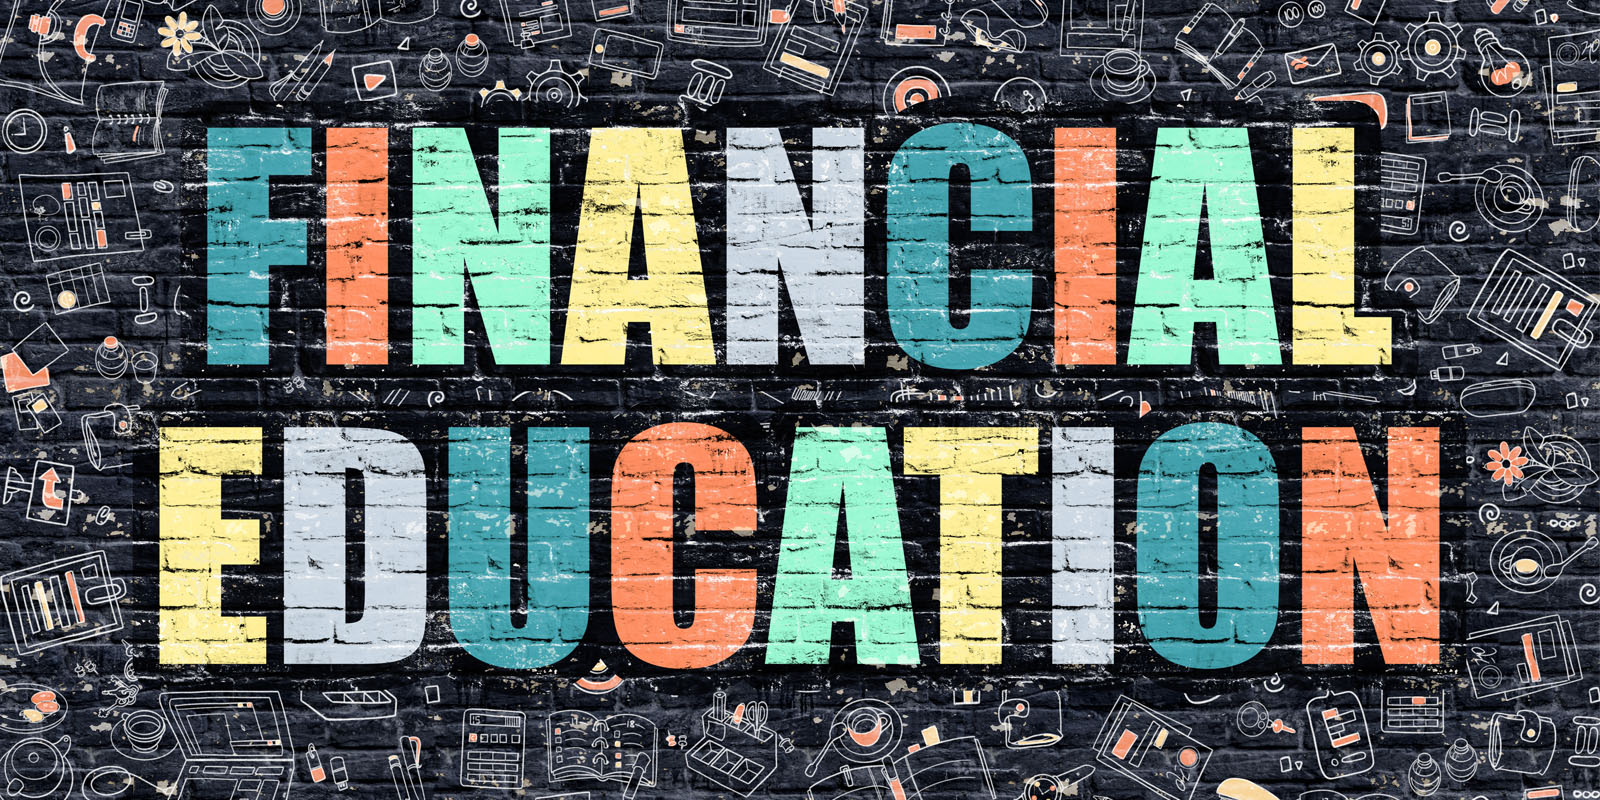 educación financiera